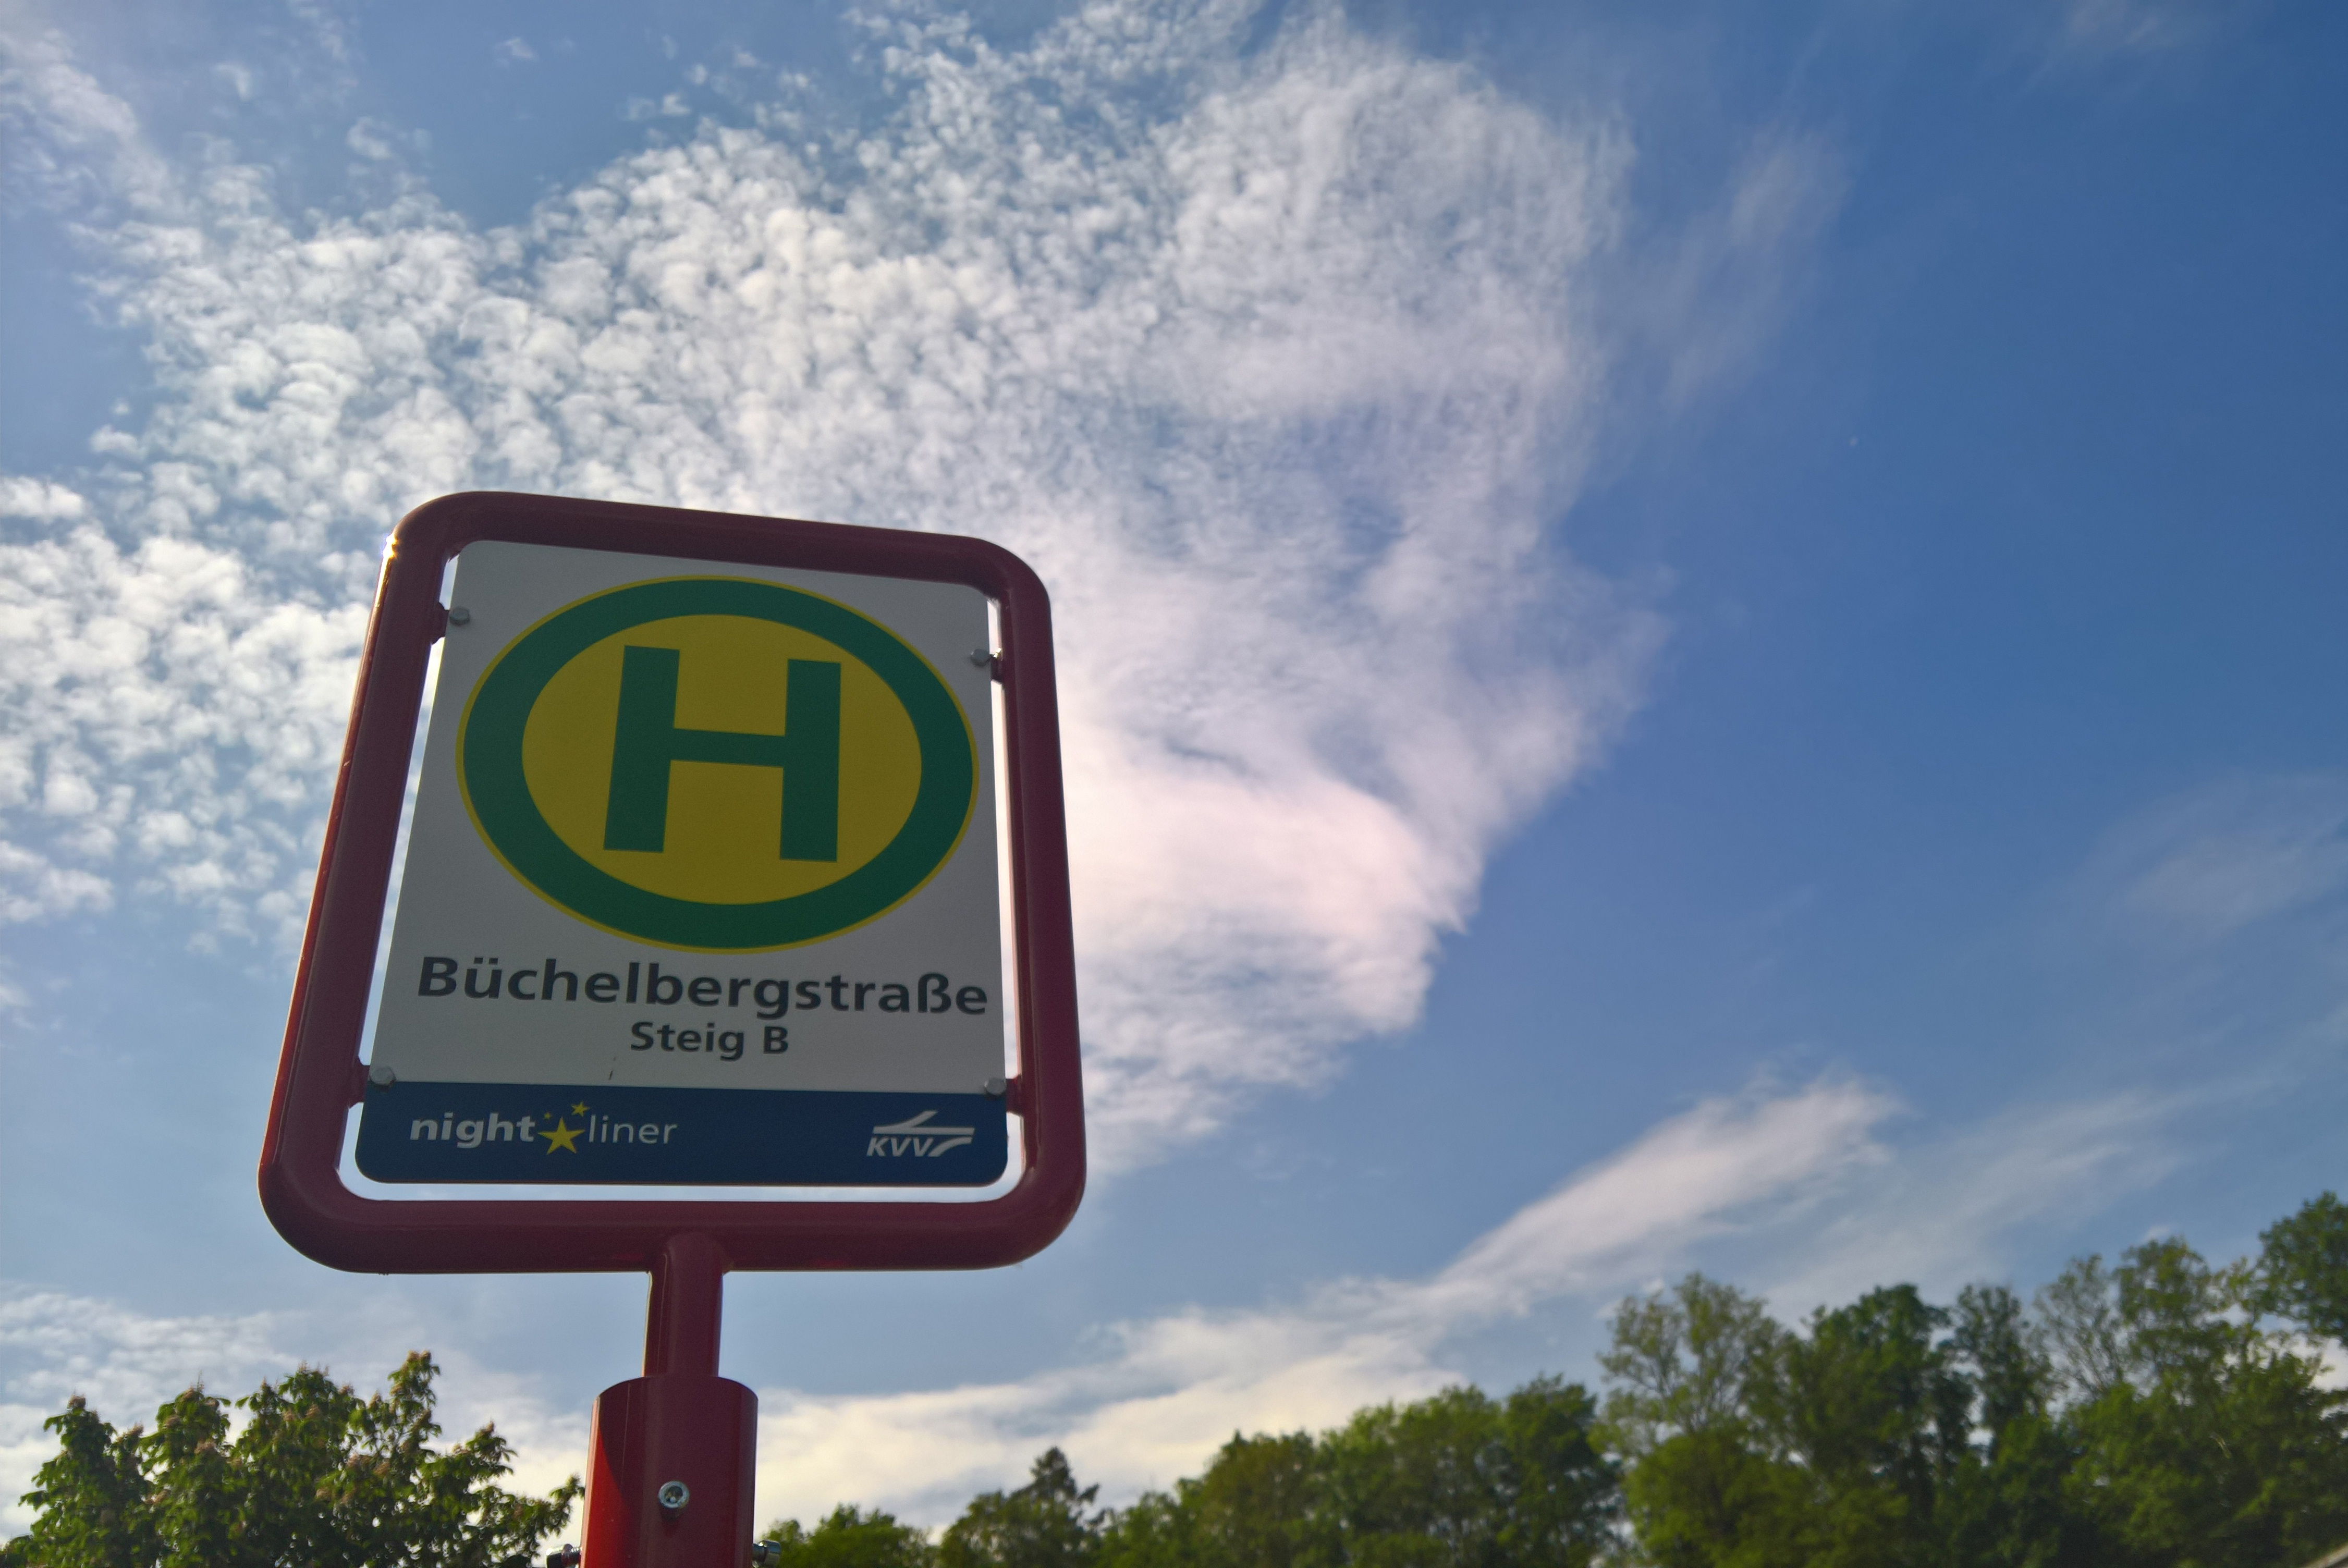 Haltestellen-Schild in der Büchelbergstraße in Grötzingen vor leicht bewölktem, blauem Himmel